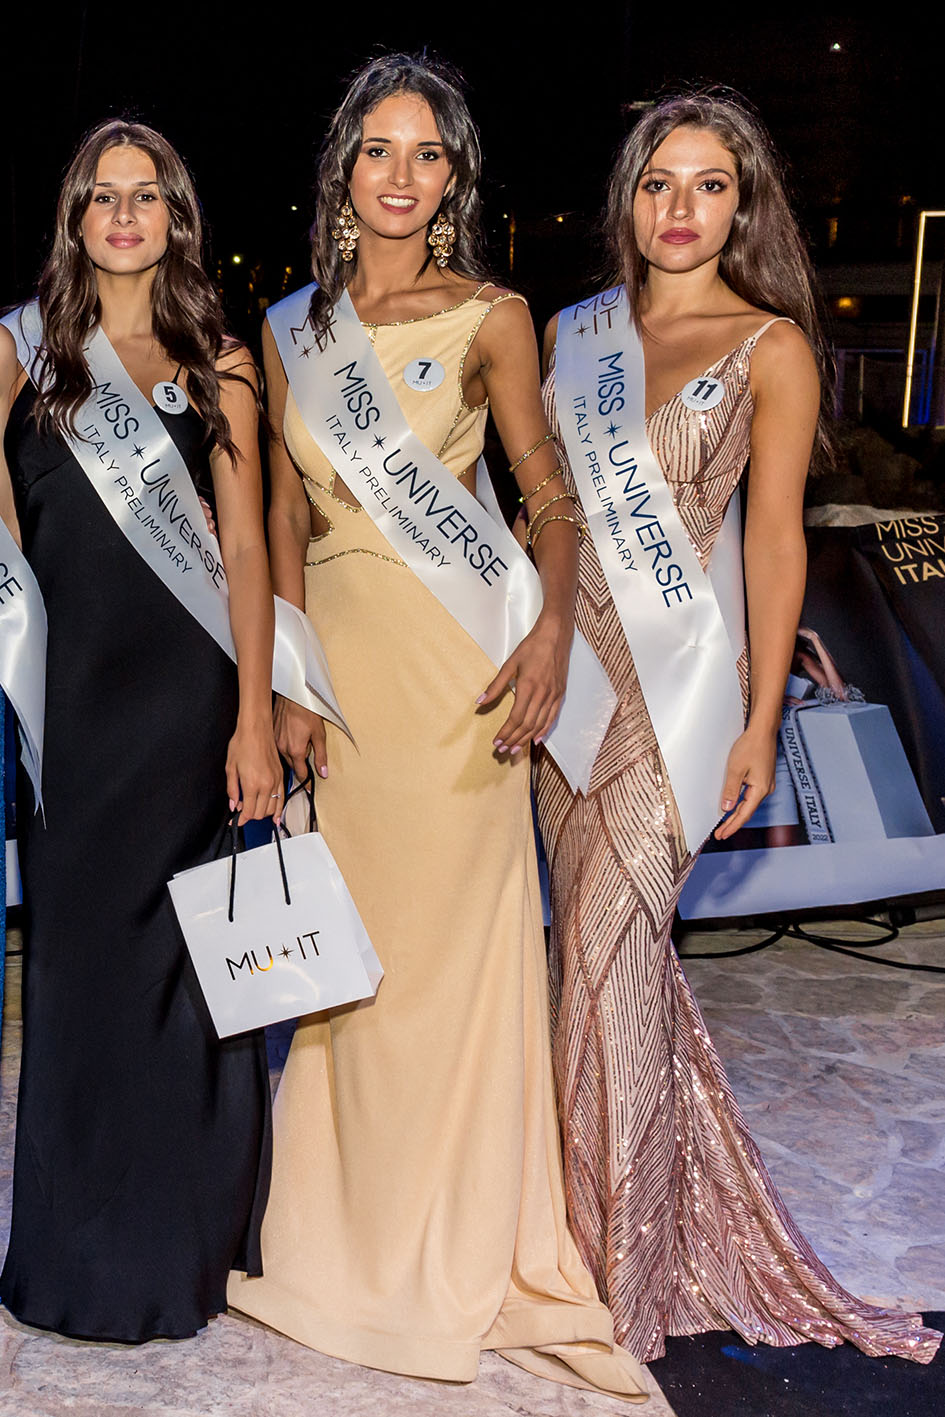 Finale interregionale di Miss Universe Italy, elette ragazze di Abruzzo e Molise